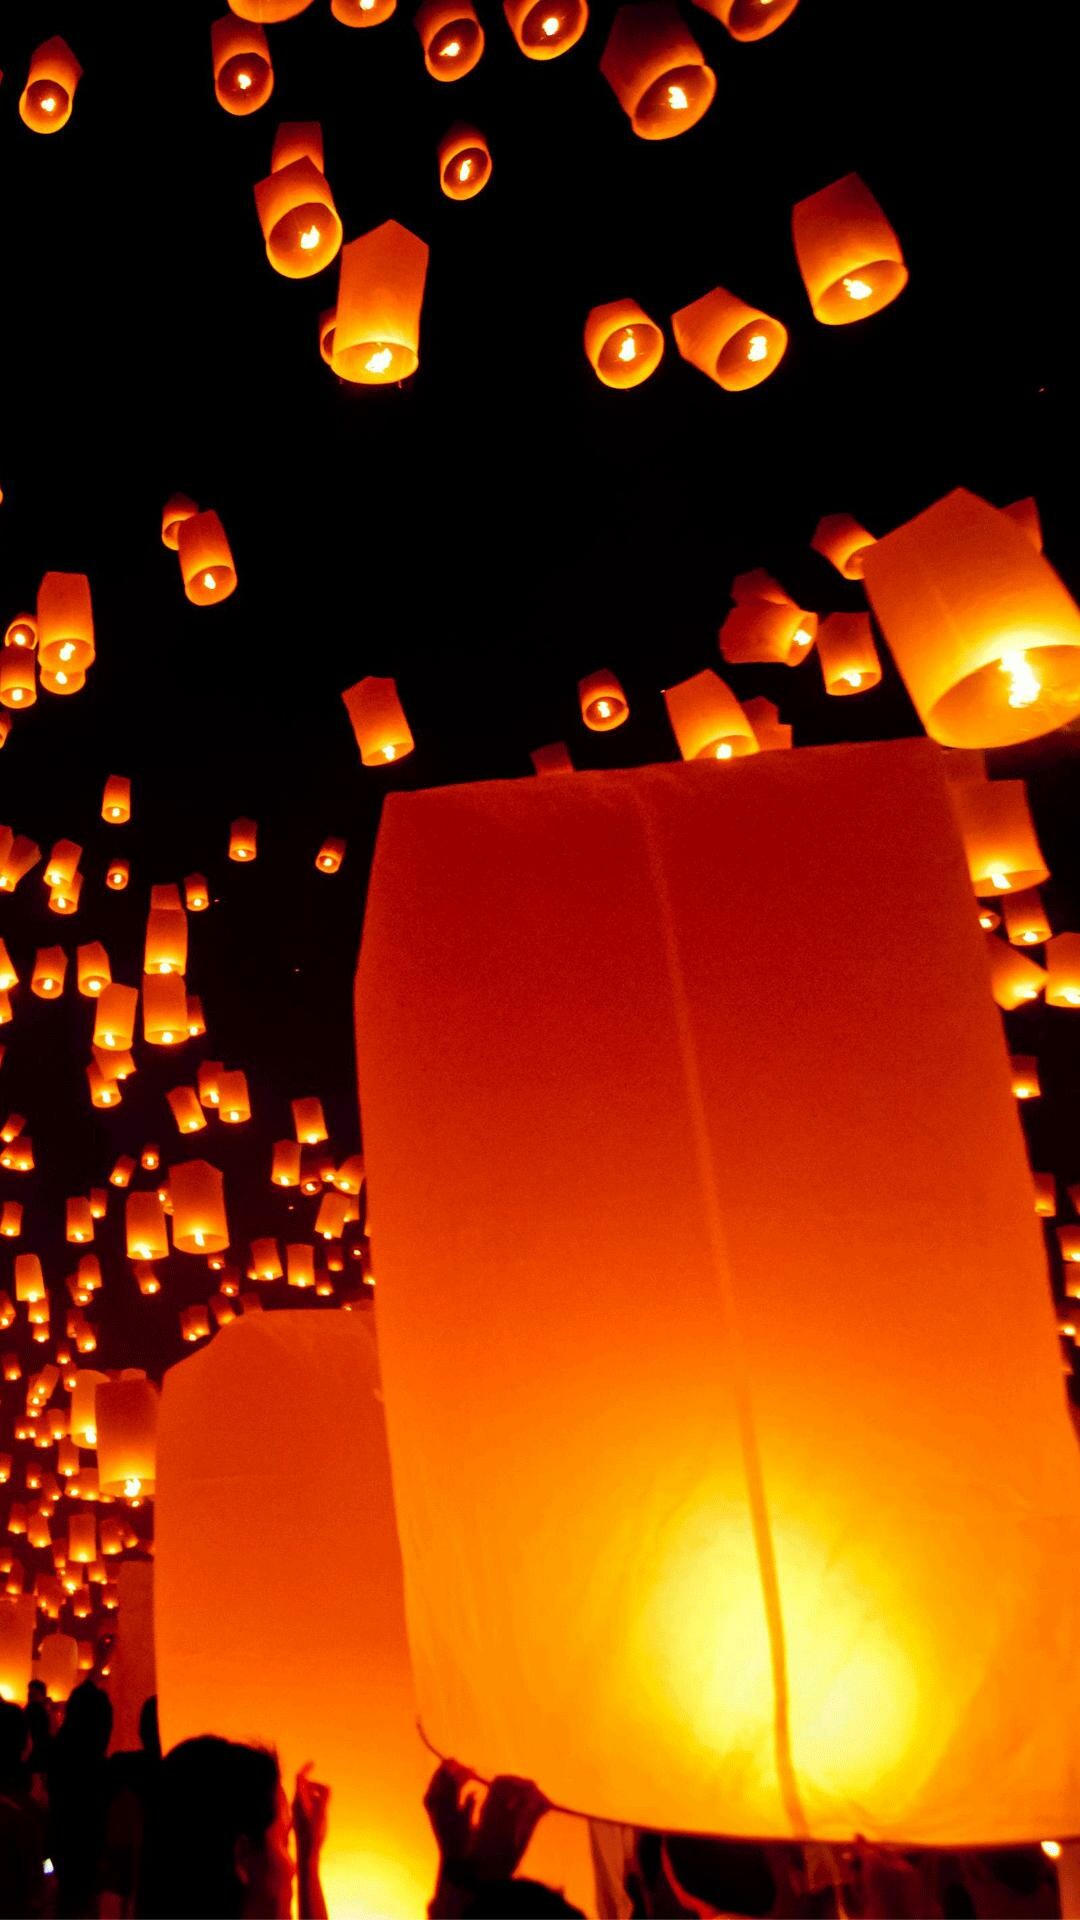 Festival: Public celebrations, Lighting lanterns symbolize "illuminating the future". 1080x1920 Full HD Background.